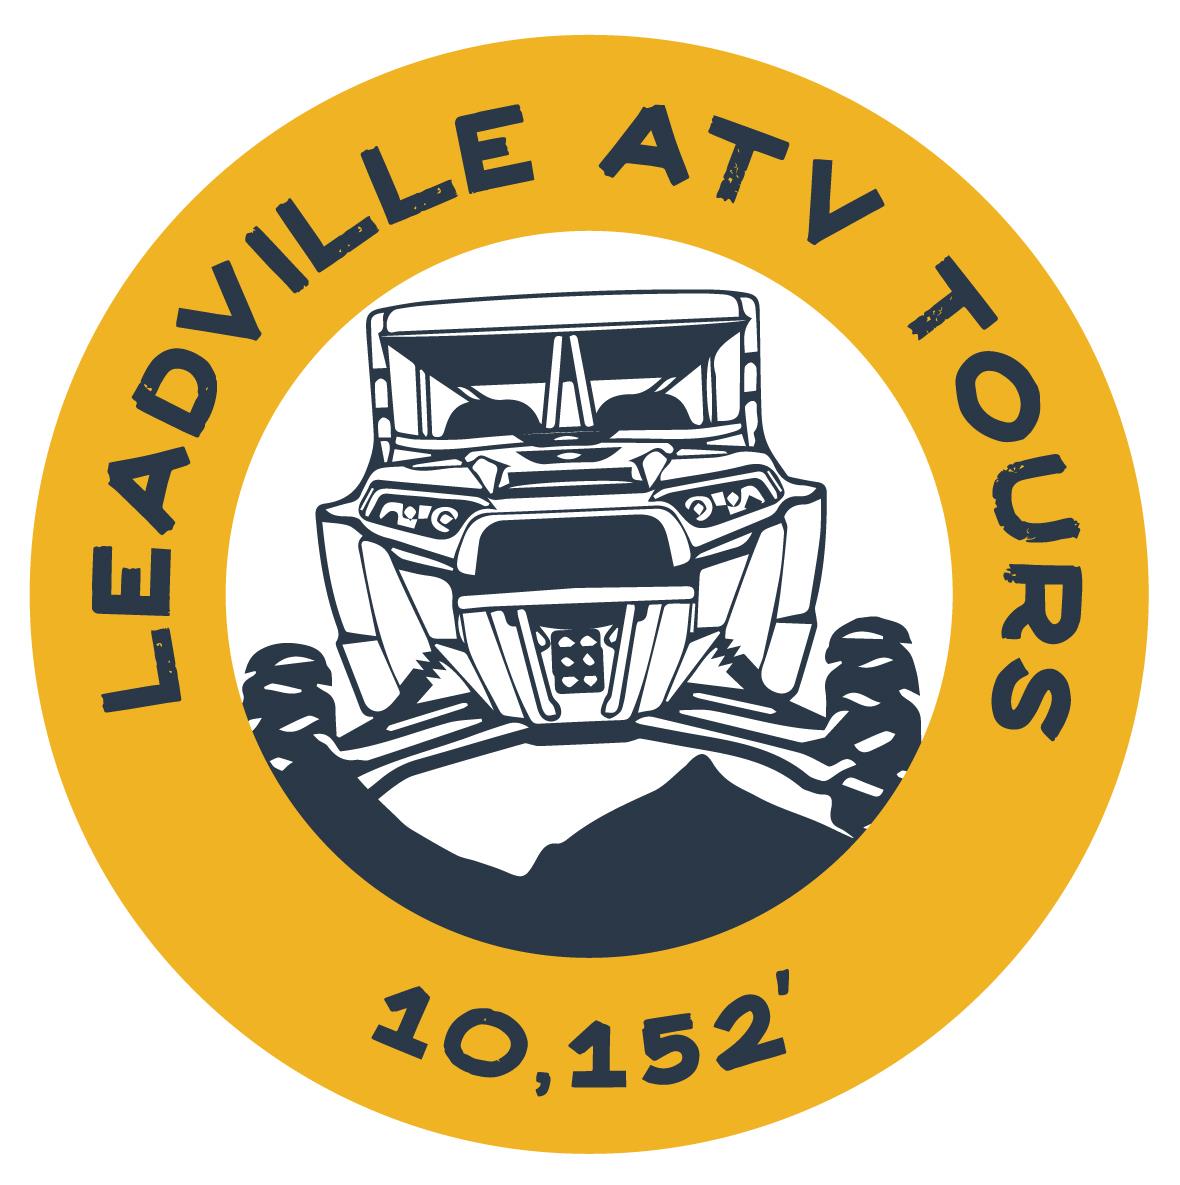 23_HPT_006_LeadvilleATV_Logo